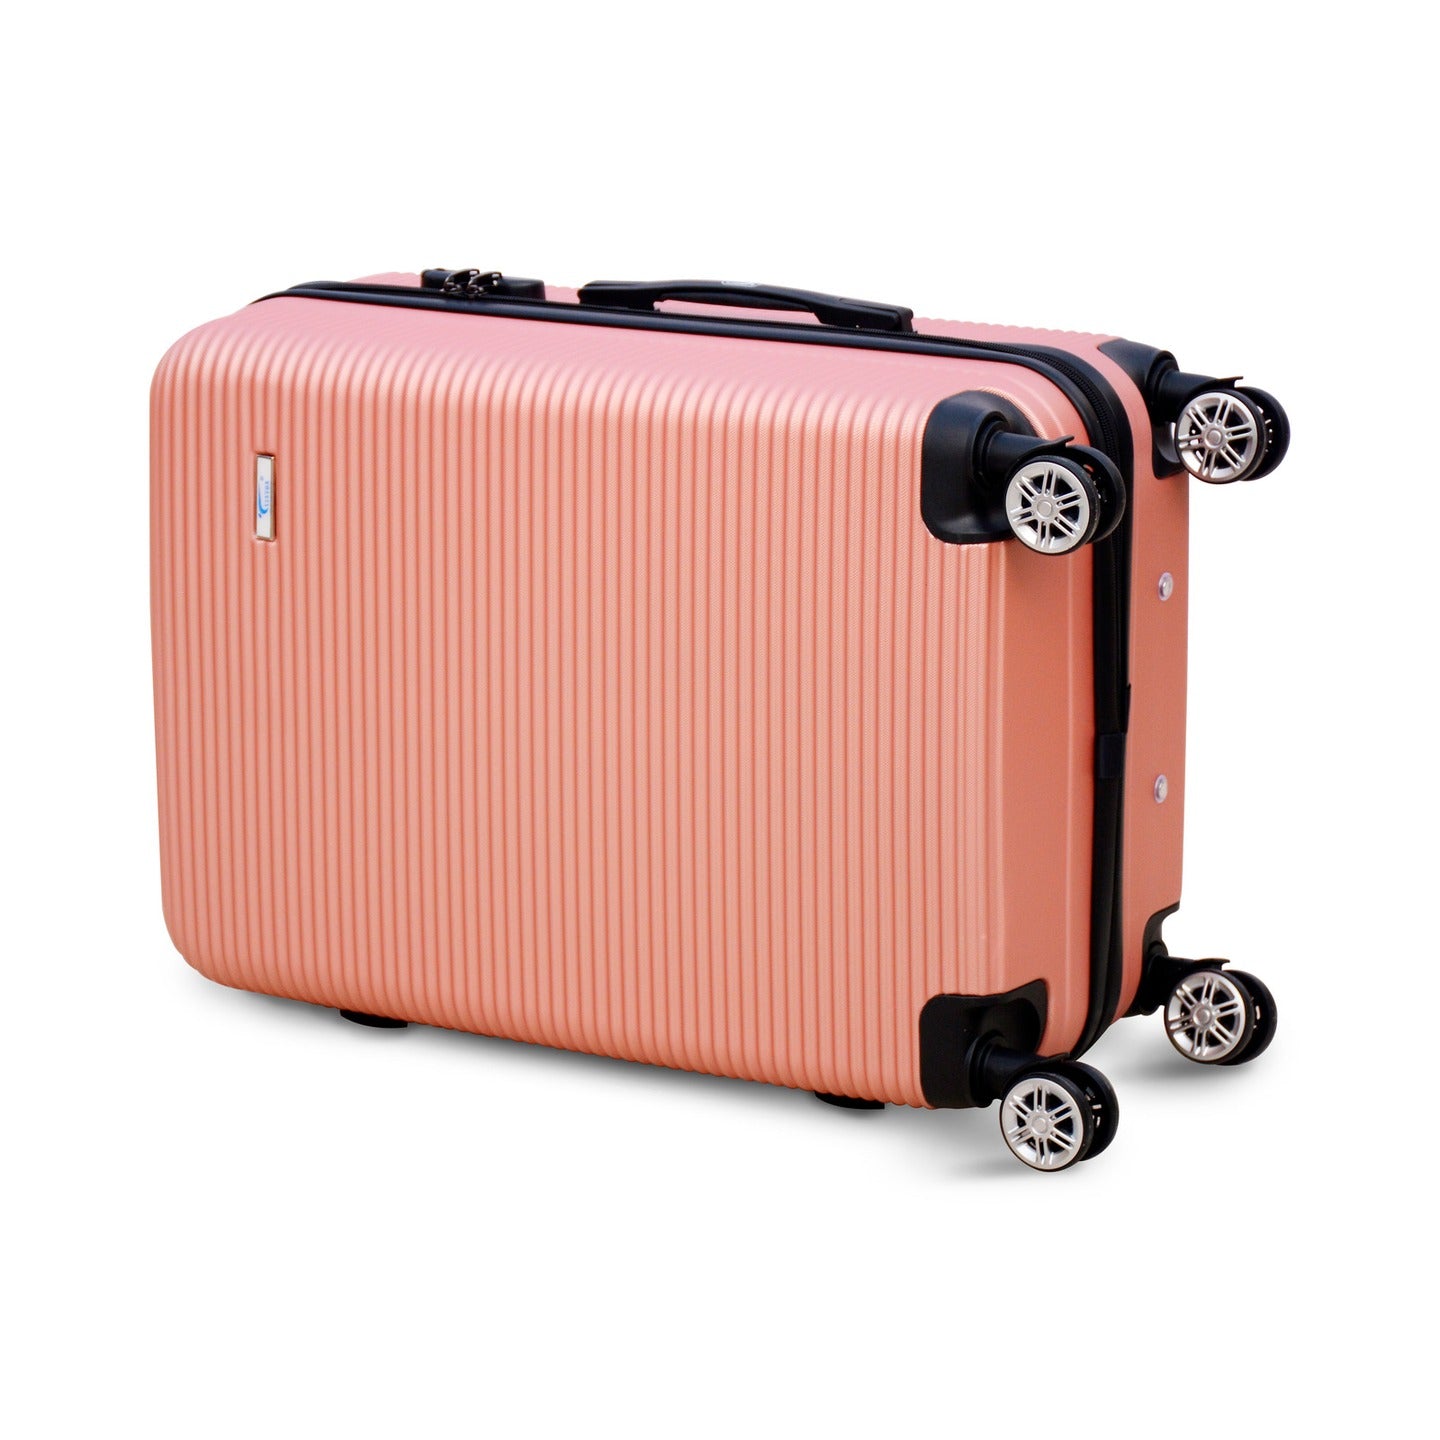 3 Piece Set 20" 24" 28 Inch Dark Pink JIAN ABS Line Lightweight Luggage With Spinner Wheel